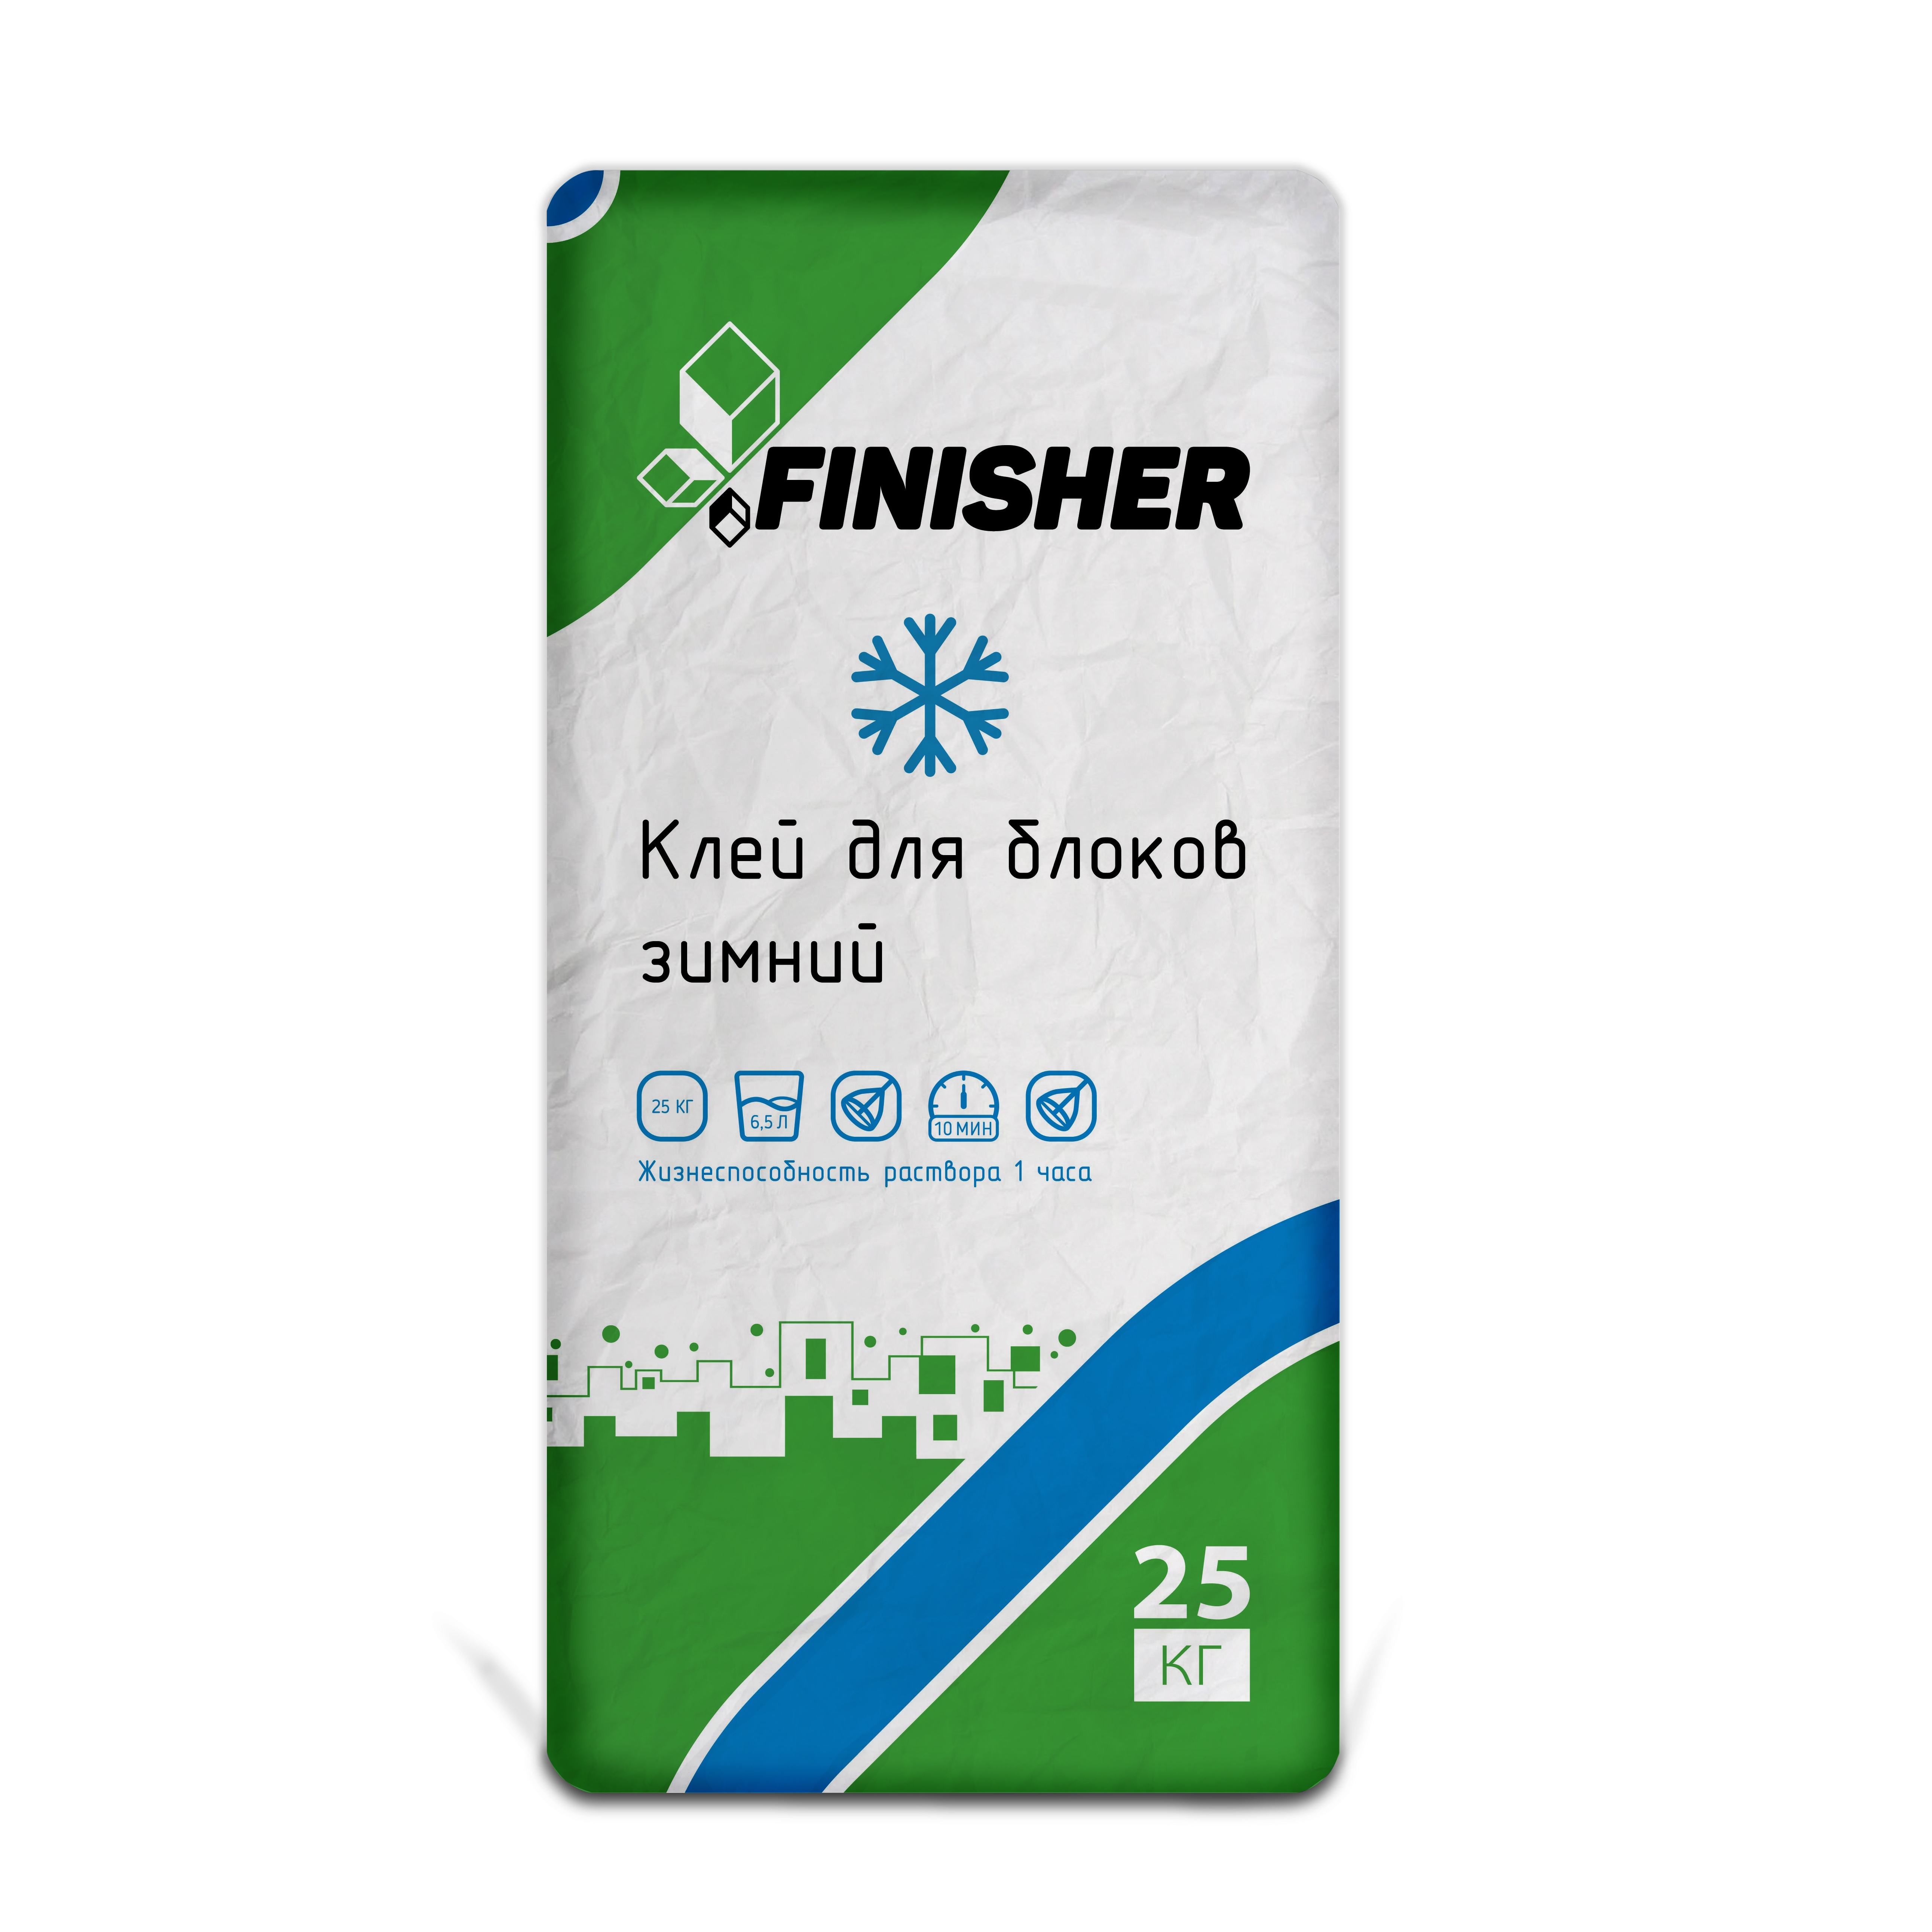 Клей для блоков FINISHER 25 кг (зимний)